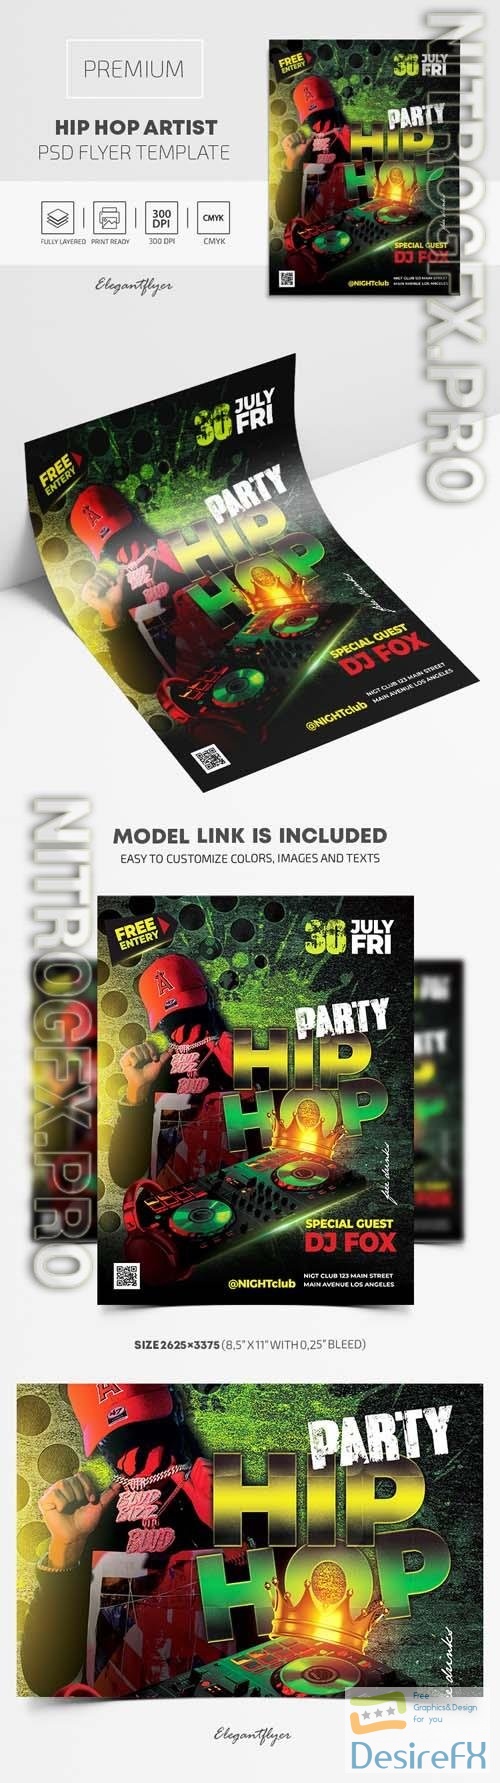 Hip Hop Artist Premium PSD Flyer Template